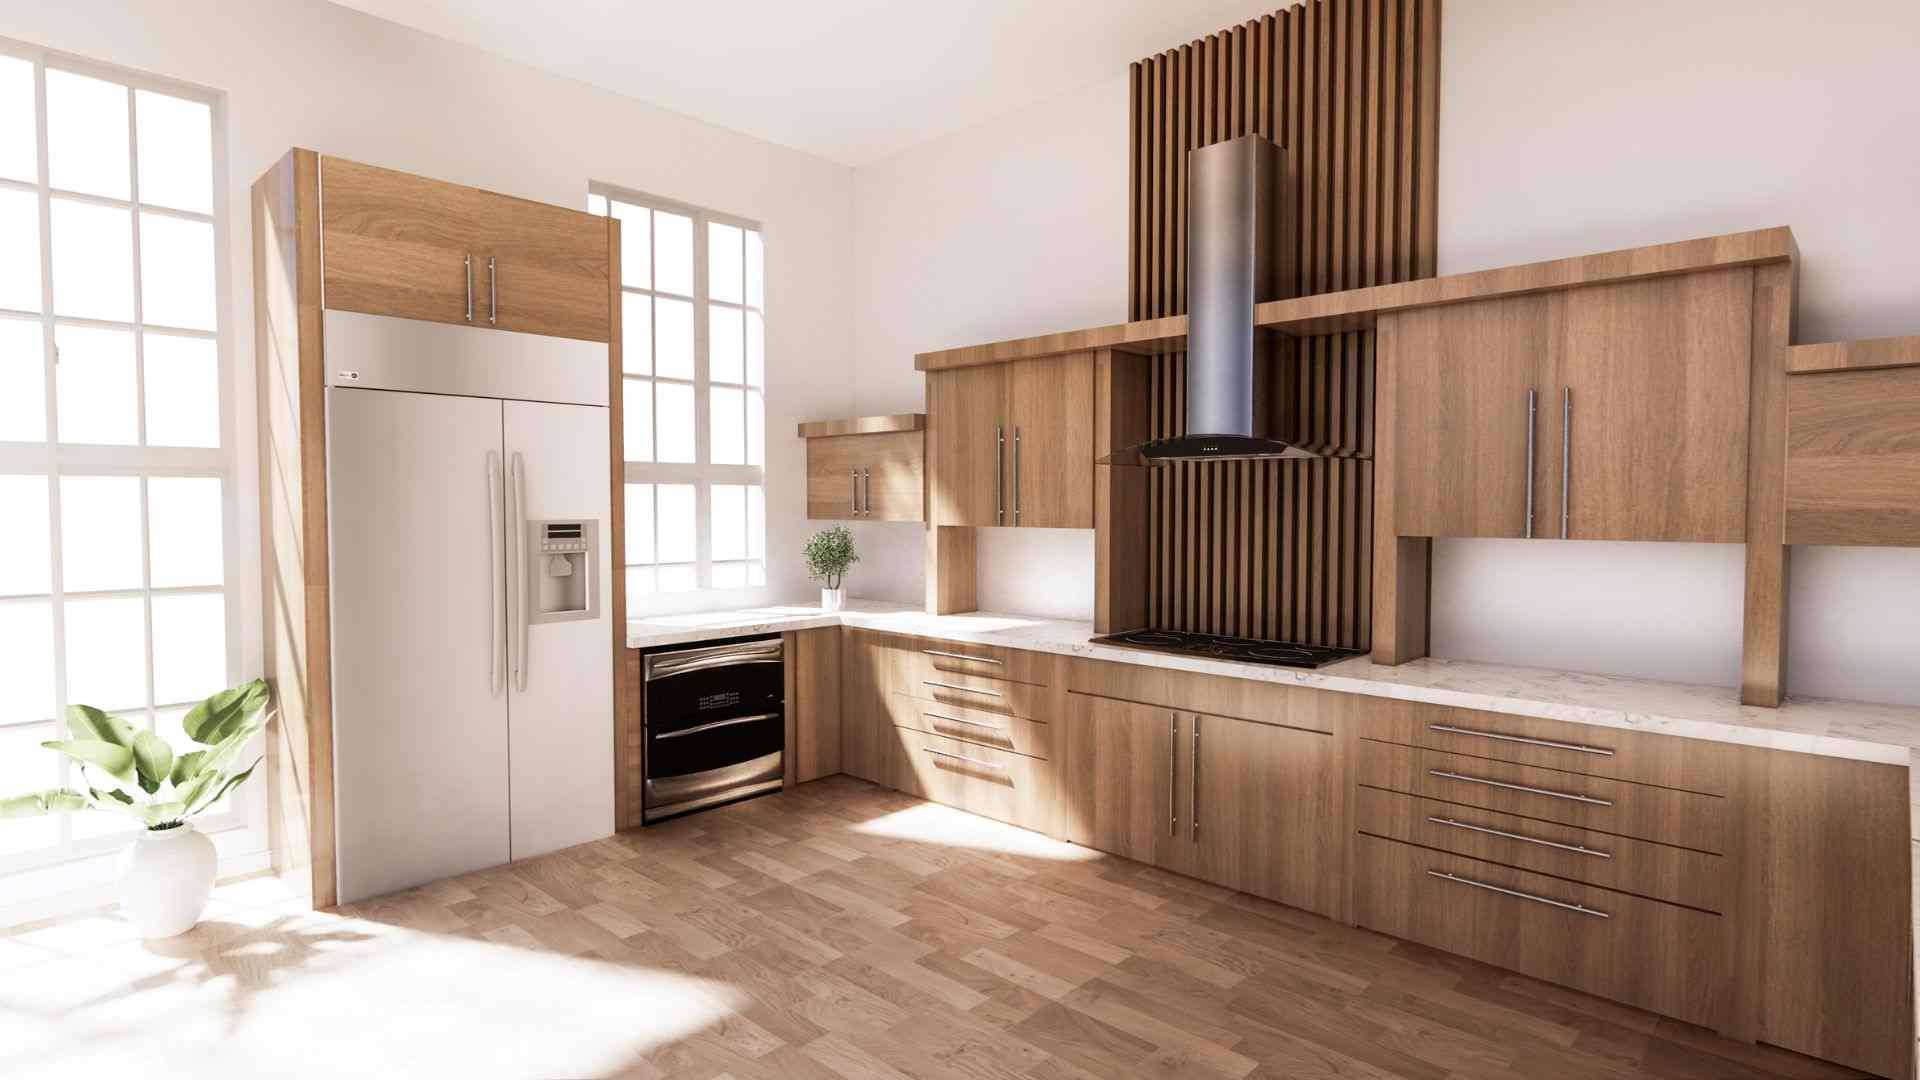 Mẫu 1: Thiết kế bếp với nội thất gỗ tự nhiên